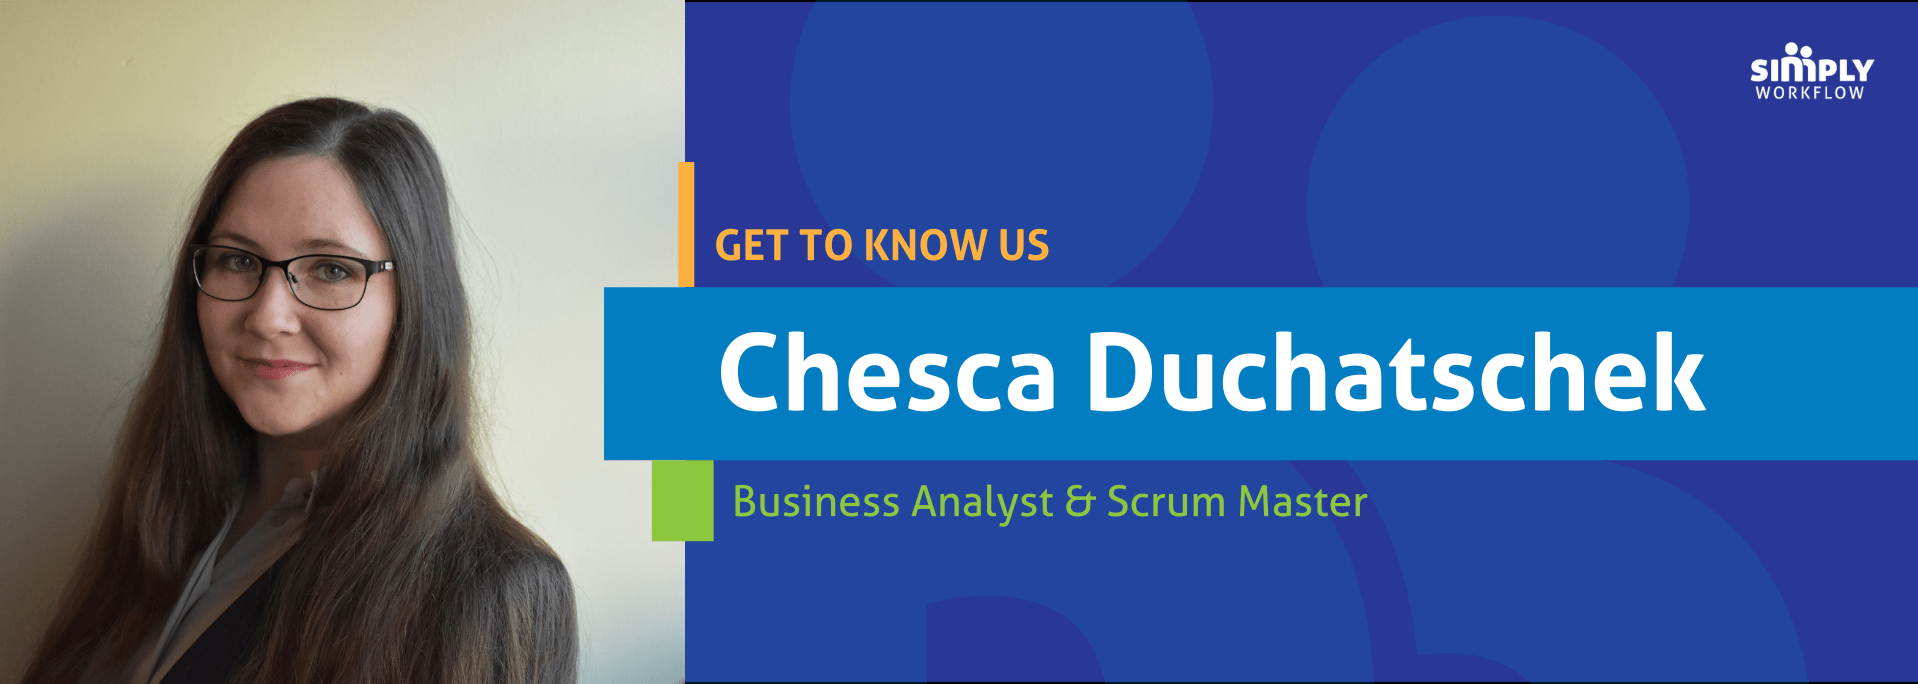 Chesca Duchatschek- Simply Workflow Get to Know Us